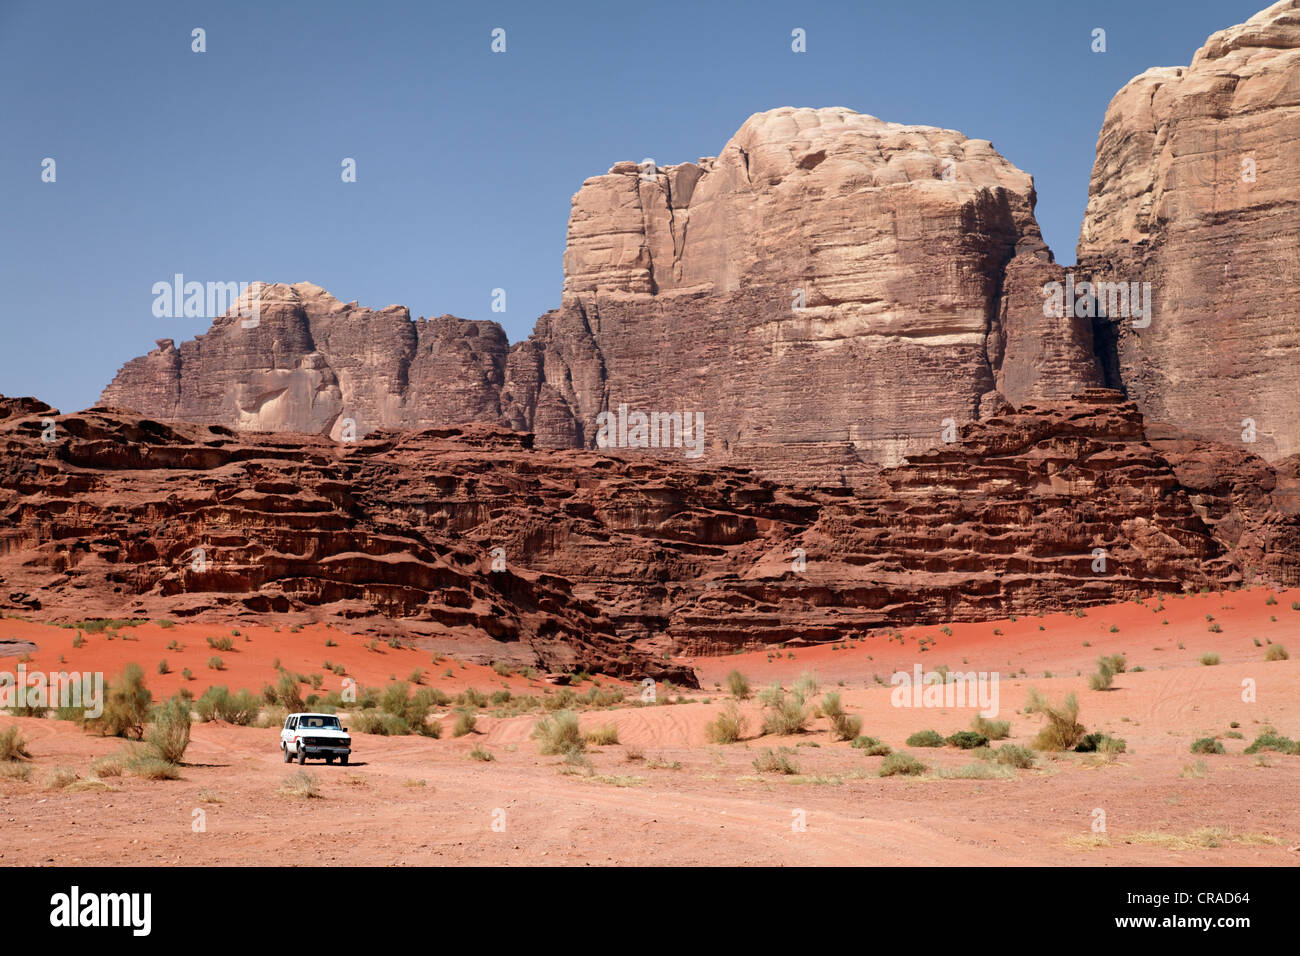 Véhicule hors route en face de la montagne, de vastes plaines et de sable rouge dans le désert, Wadi Rum, Royaume hachémite de Jordanie Banque D'Images